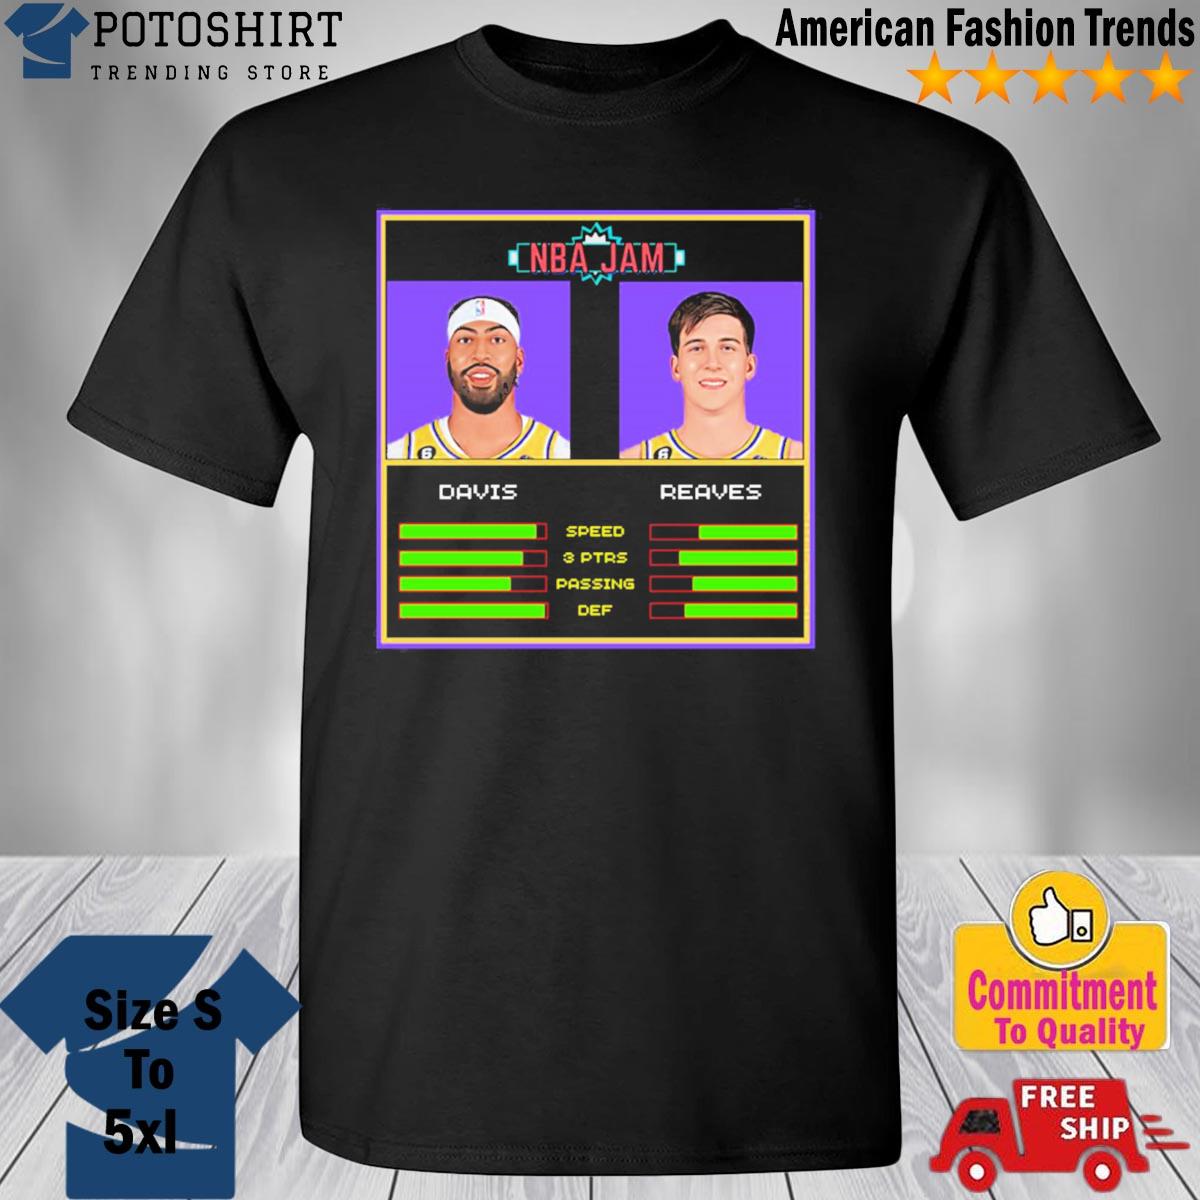 A.D & Austin NBA Jam Edition T-Shirt